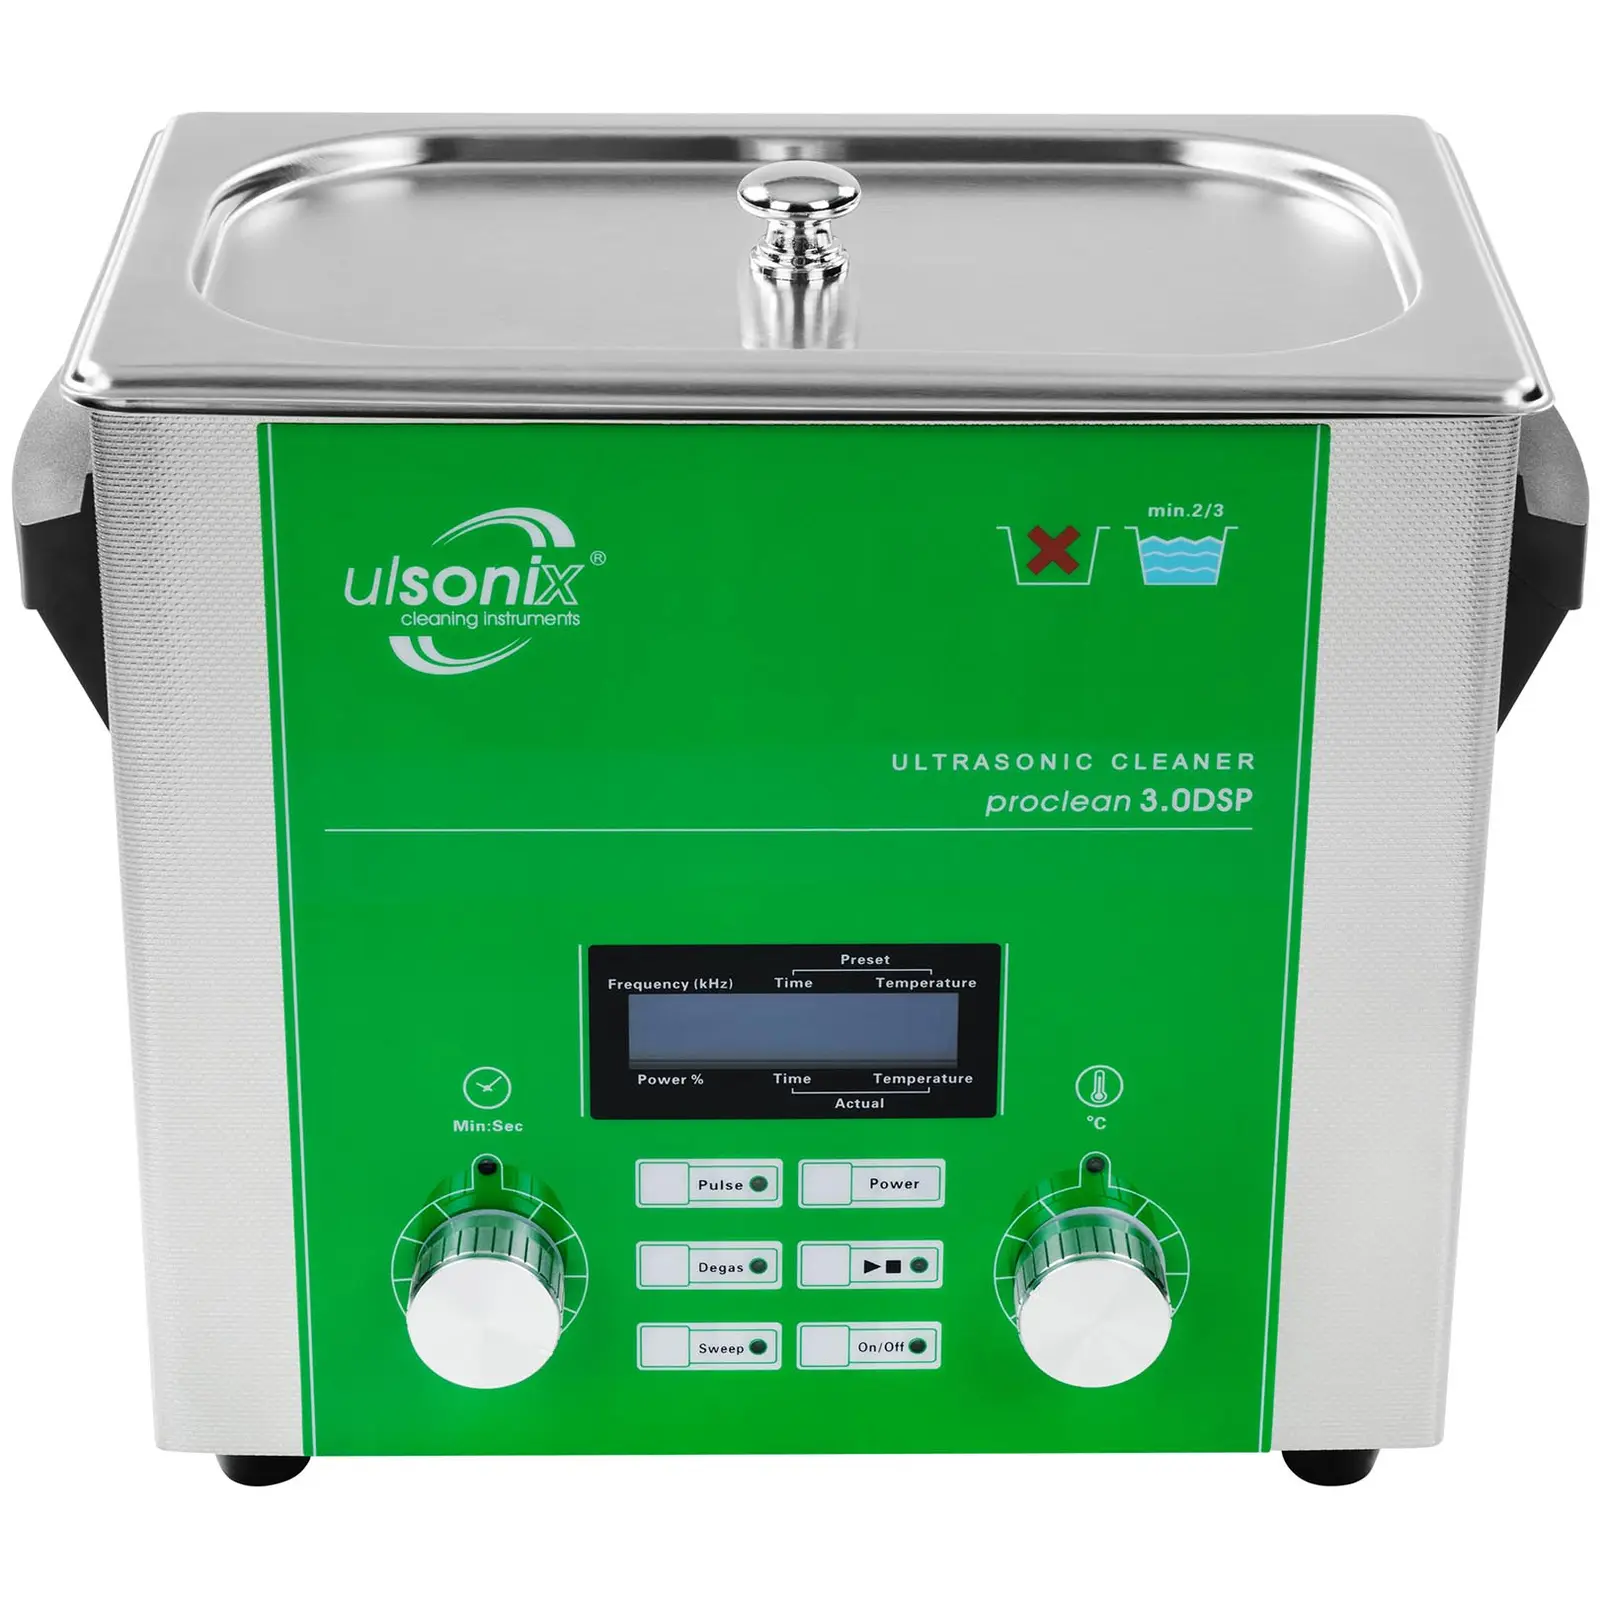 Ultraschallreiniger - 3 Liter - Degas - Sweep - Puls